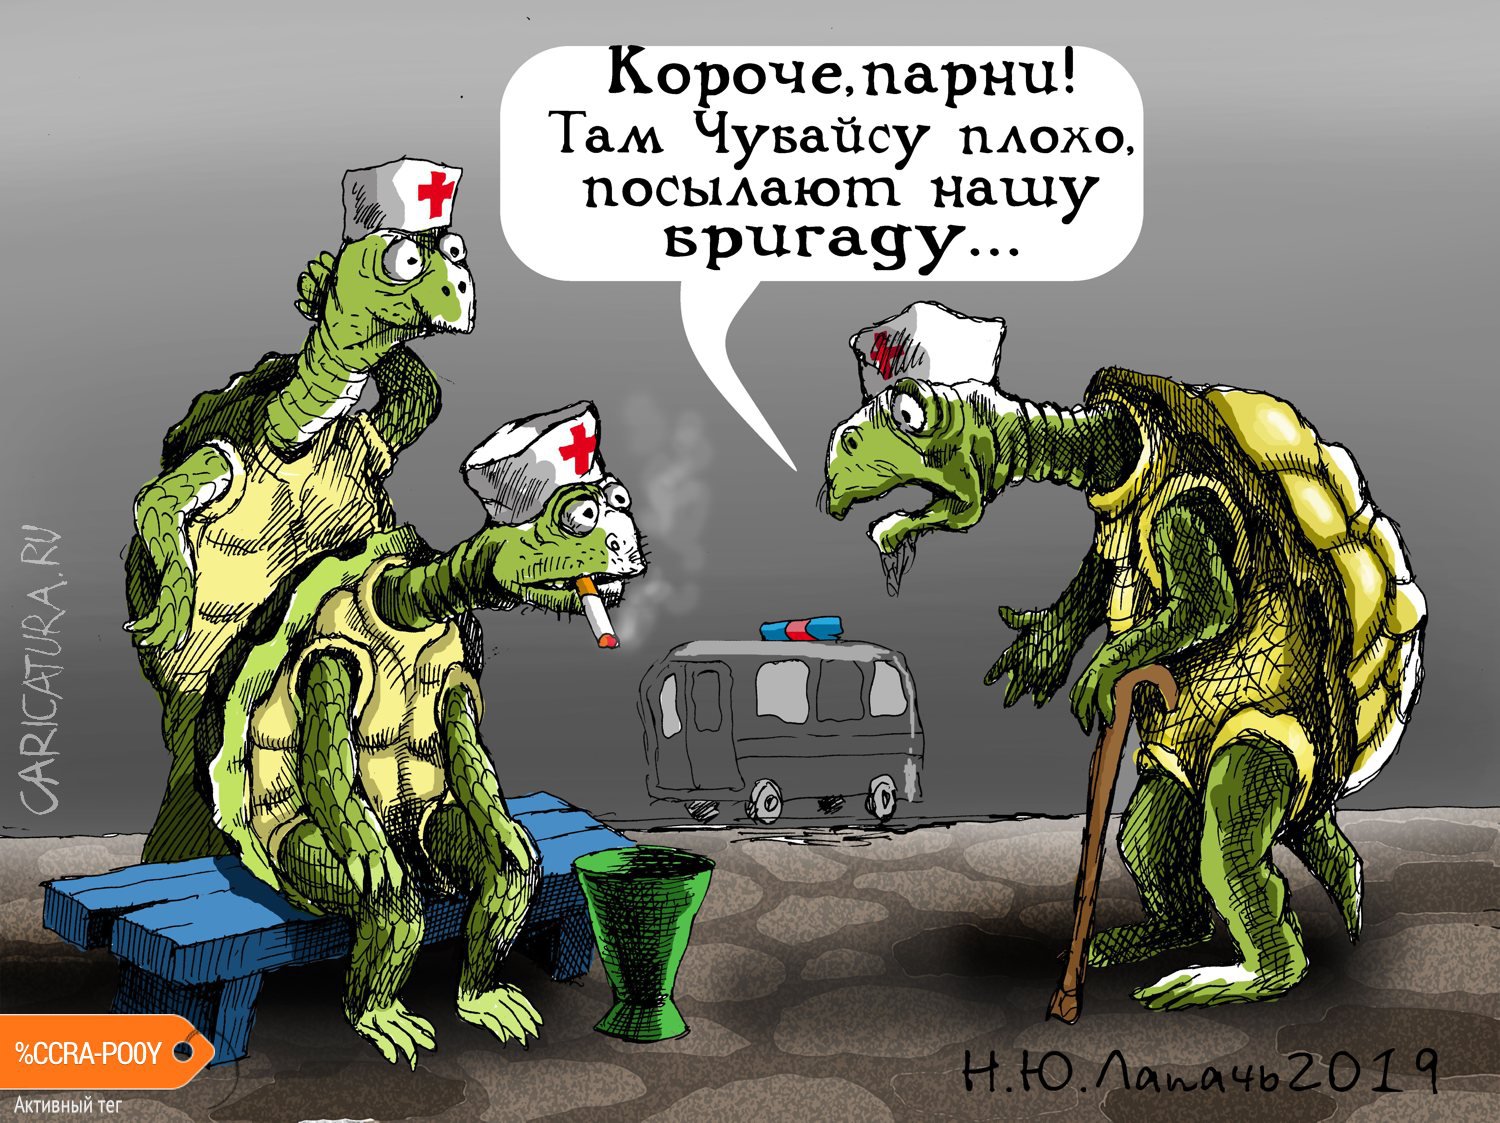 Карикатура "Быстрая помощь", Теплый Телогрей